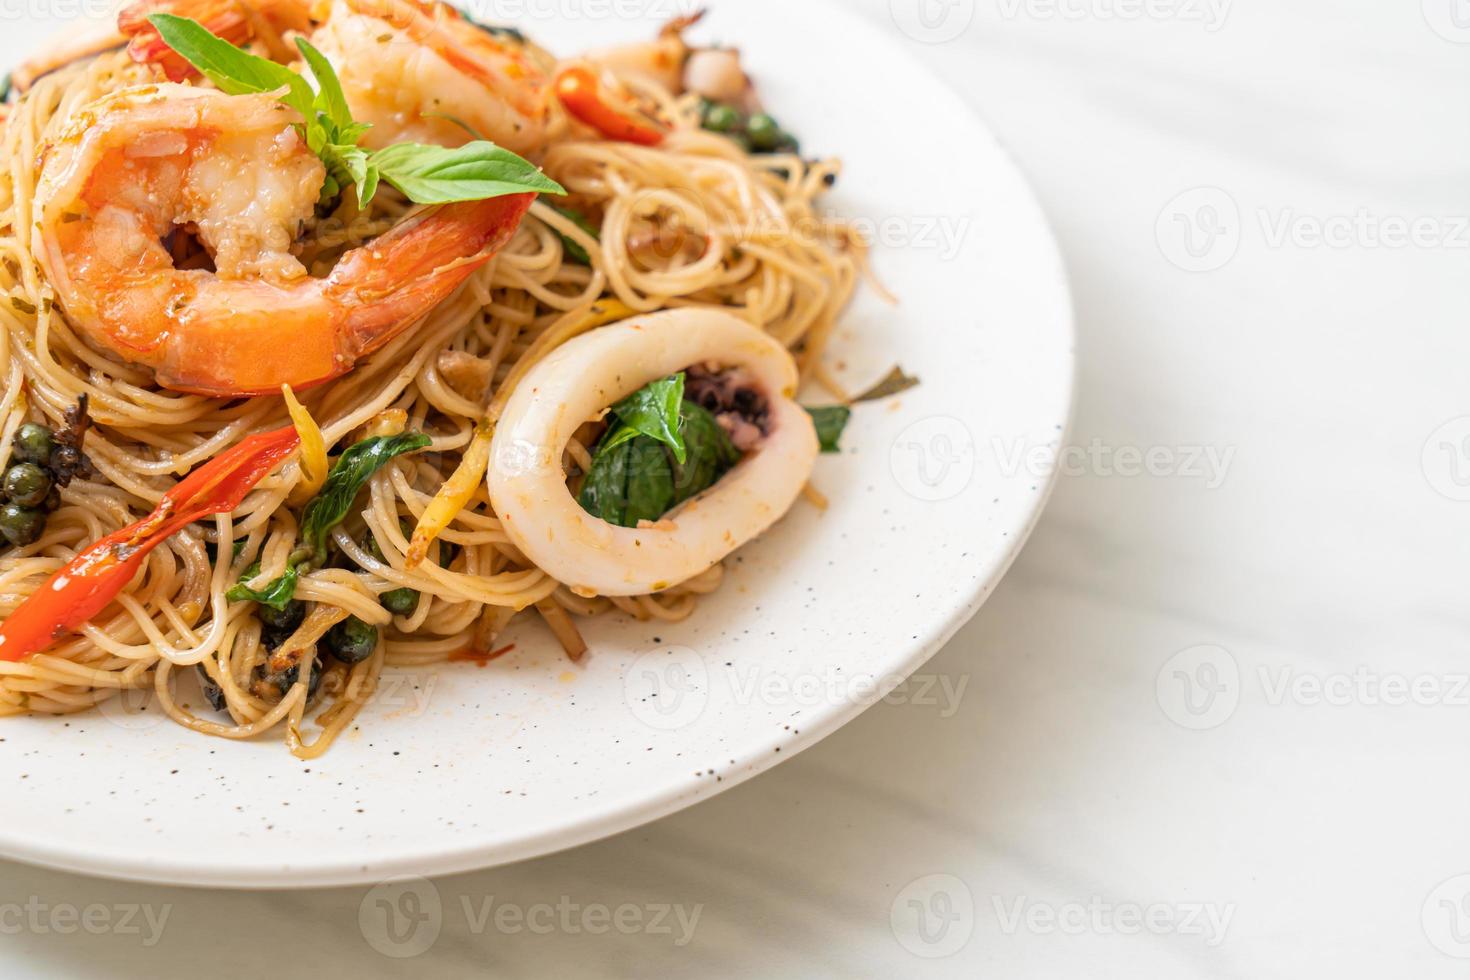 nouilles chinoises sautées au basilic, piment, crevettes et calamars - style cuisine asiatique photo